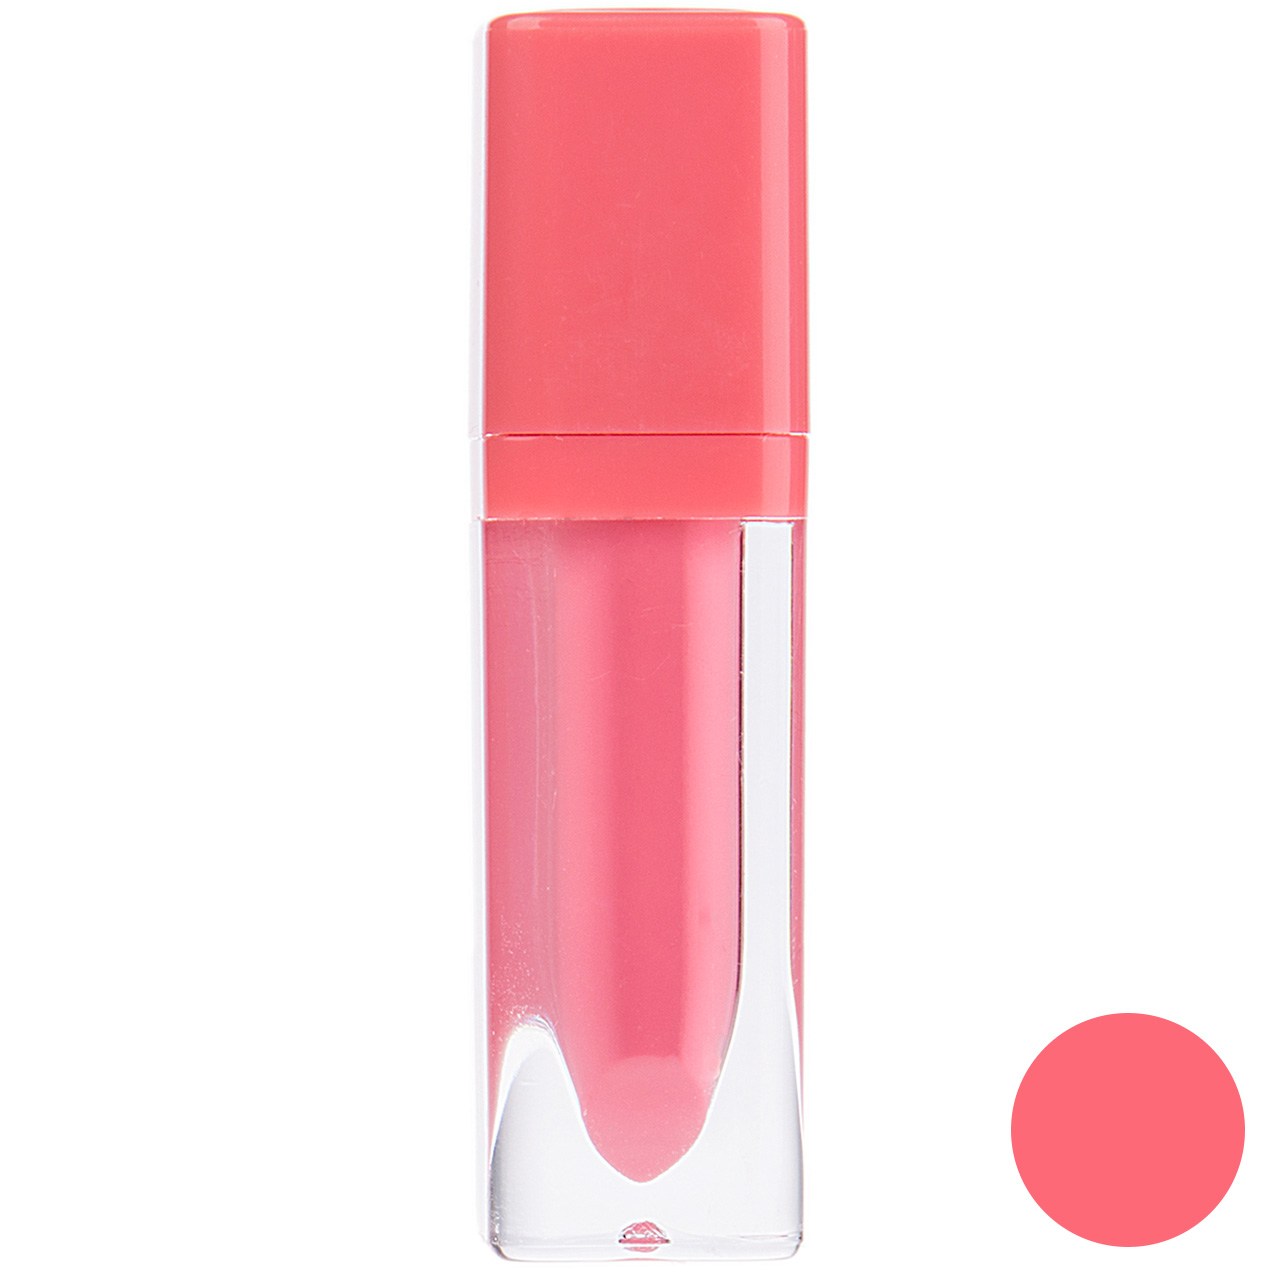 رژ لب مایع اسنس سری Liquid Lipstick مدل Peach Party شماره 05